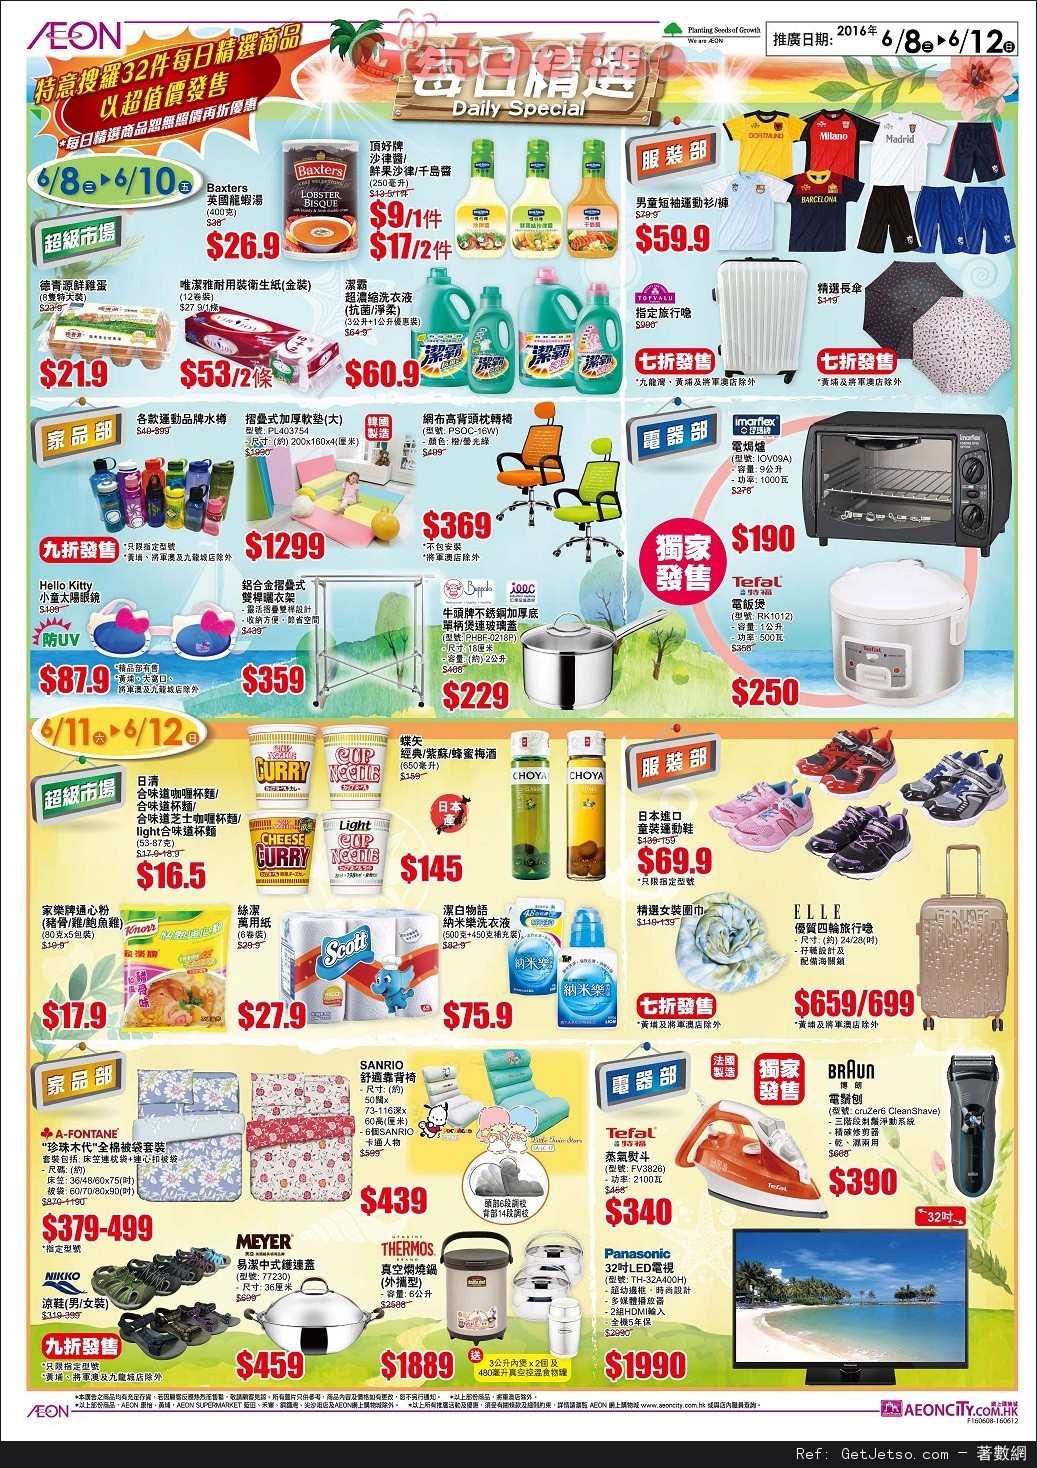 AEON 夏日大割引店內購物優惠(至16年6月12日)圖片4